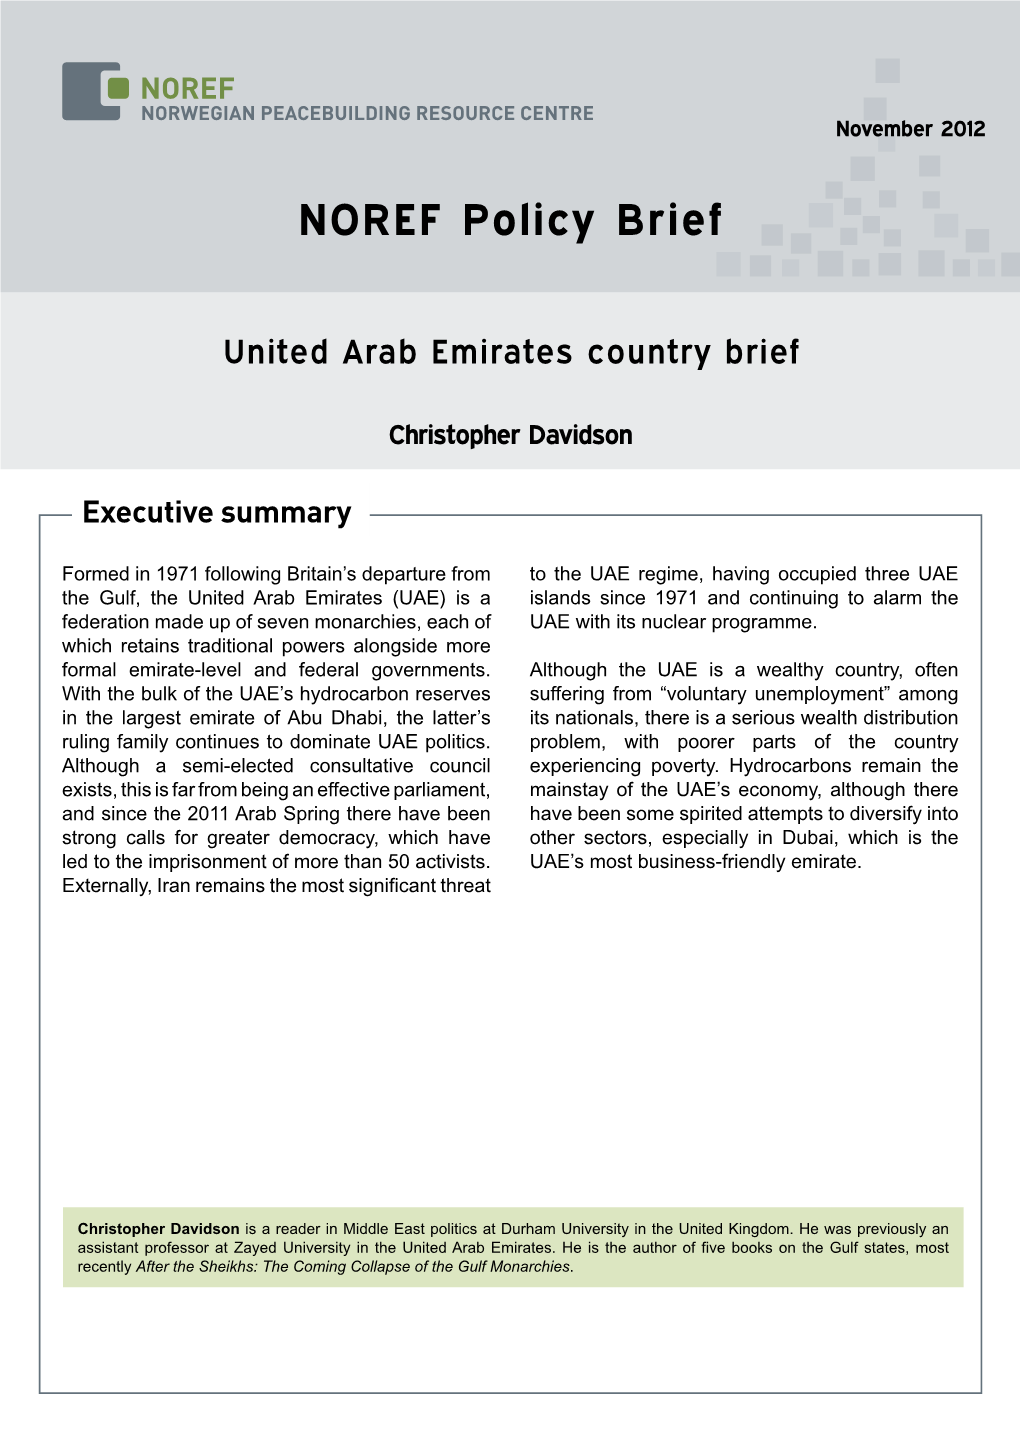 United Arab Emirates Country Brief